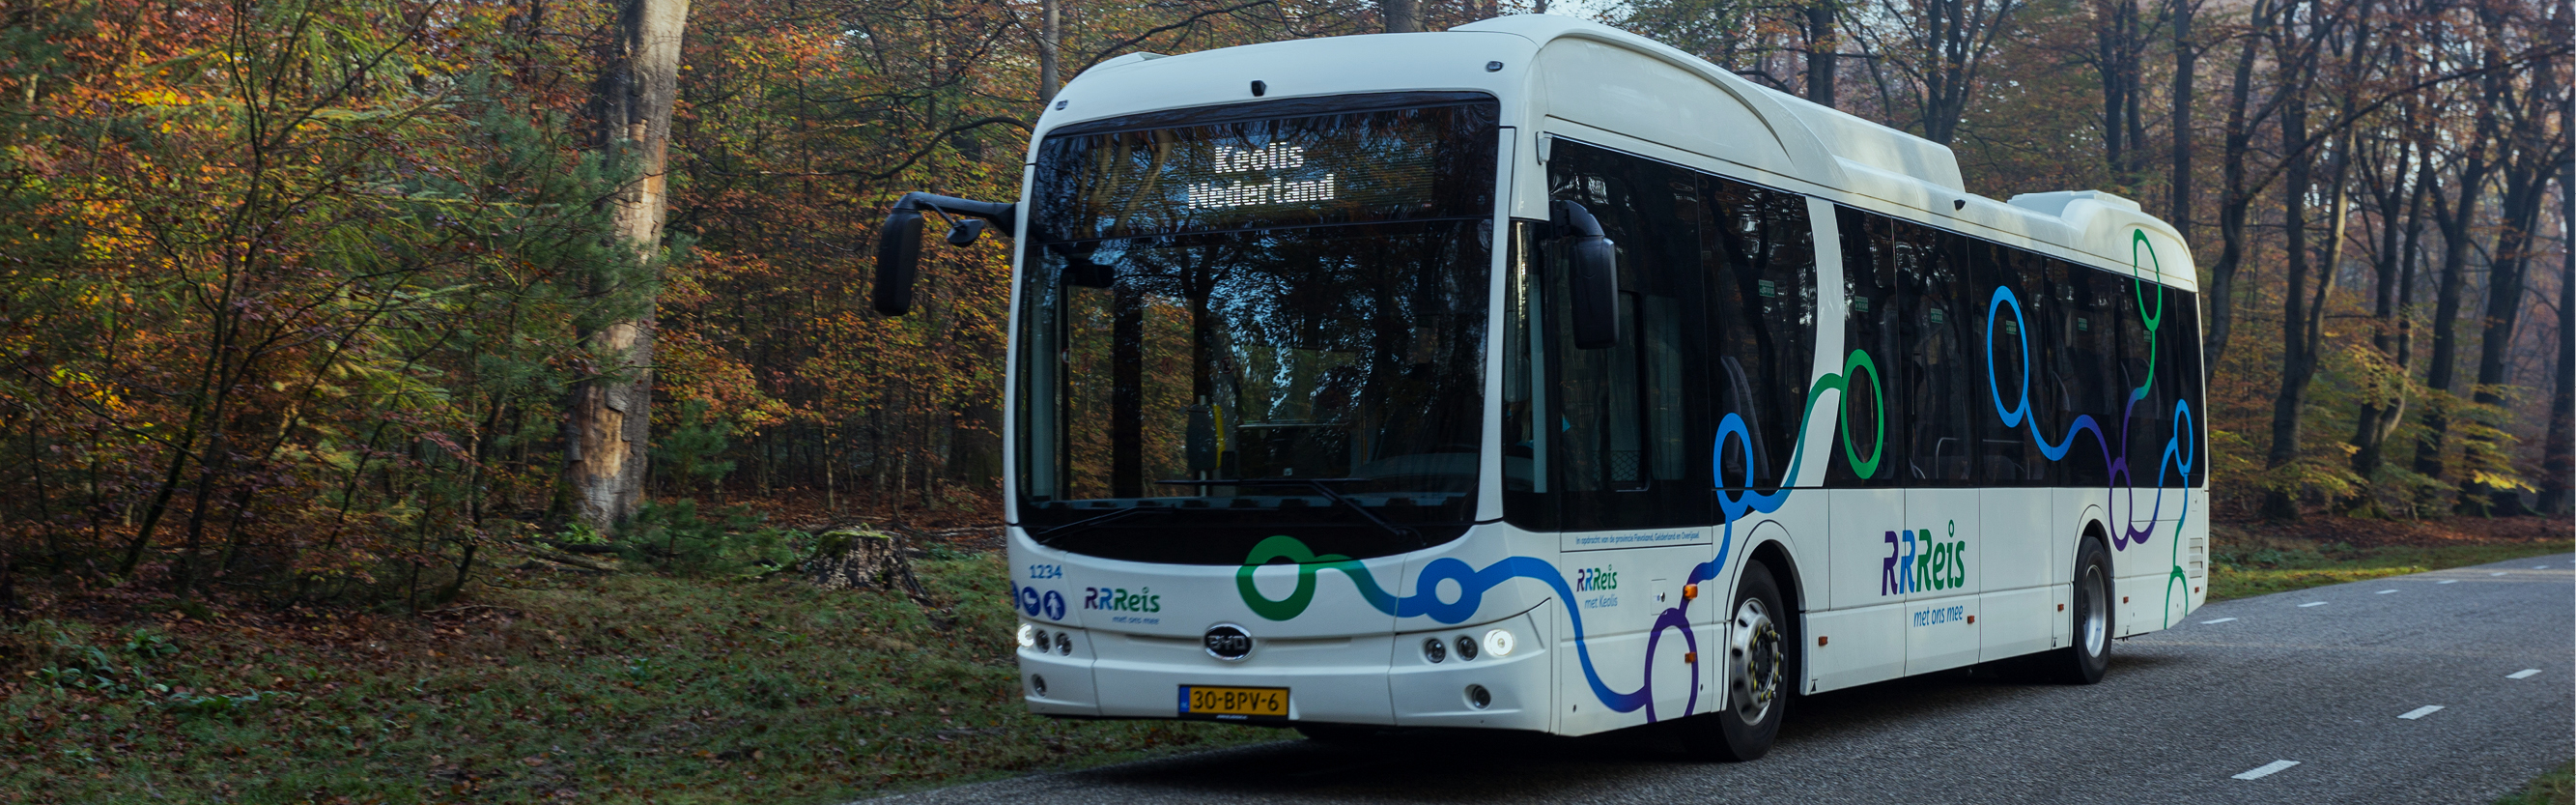 le bus, une solution de mobilité partagée